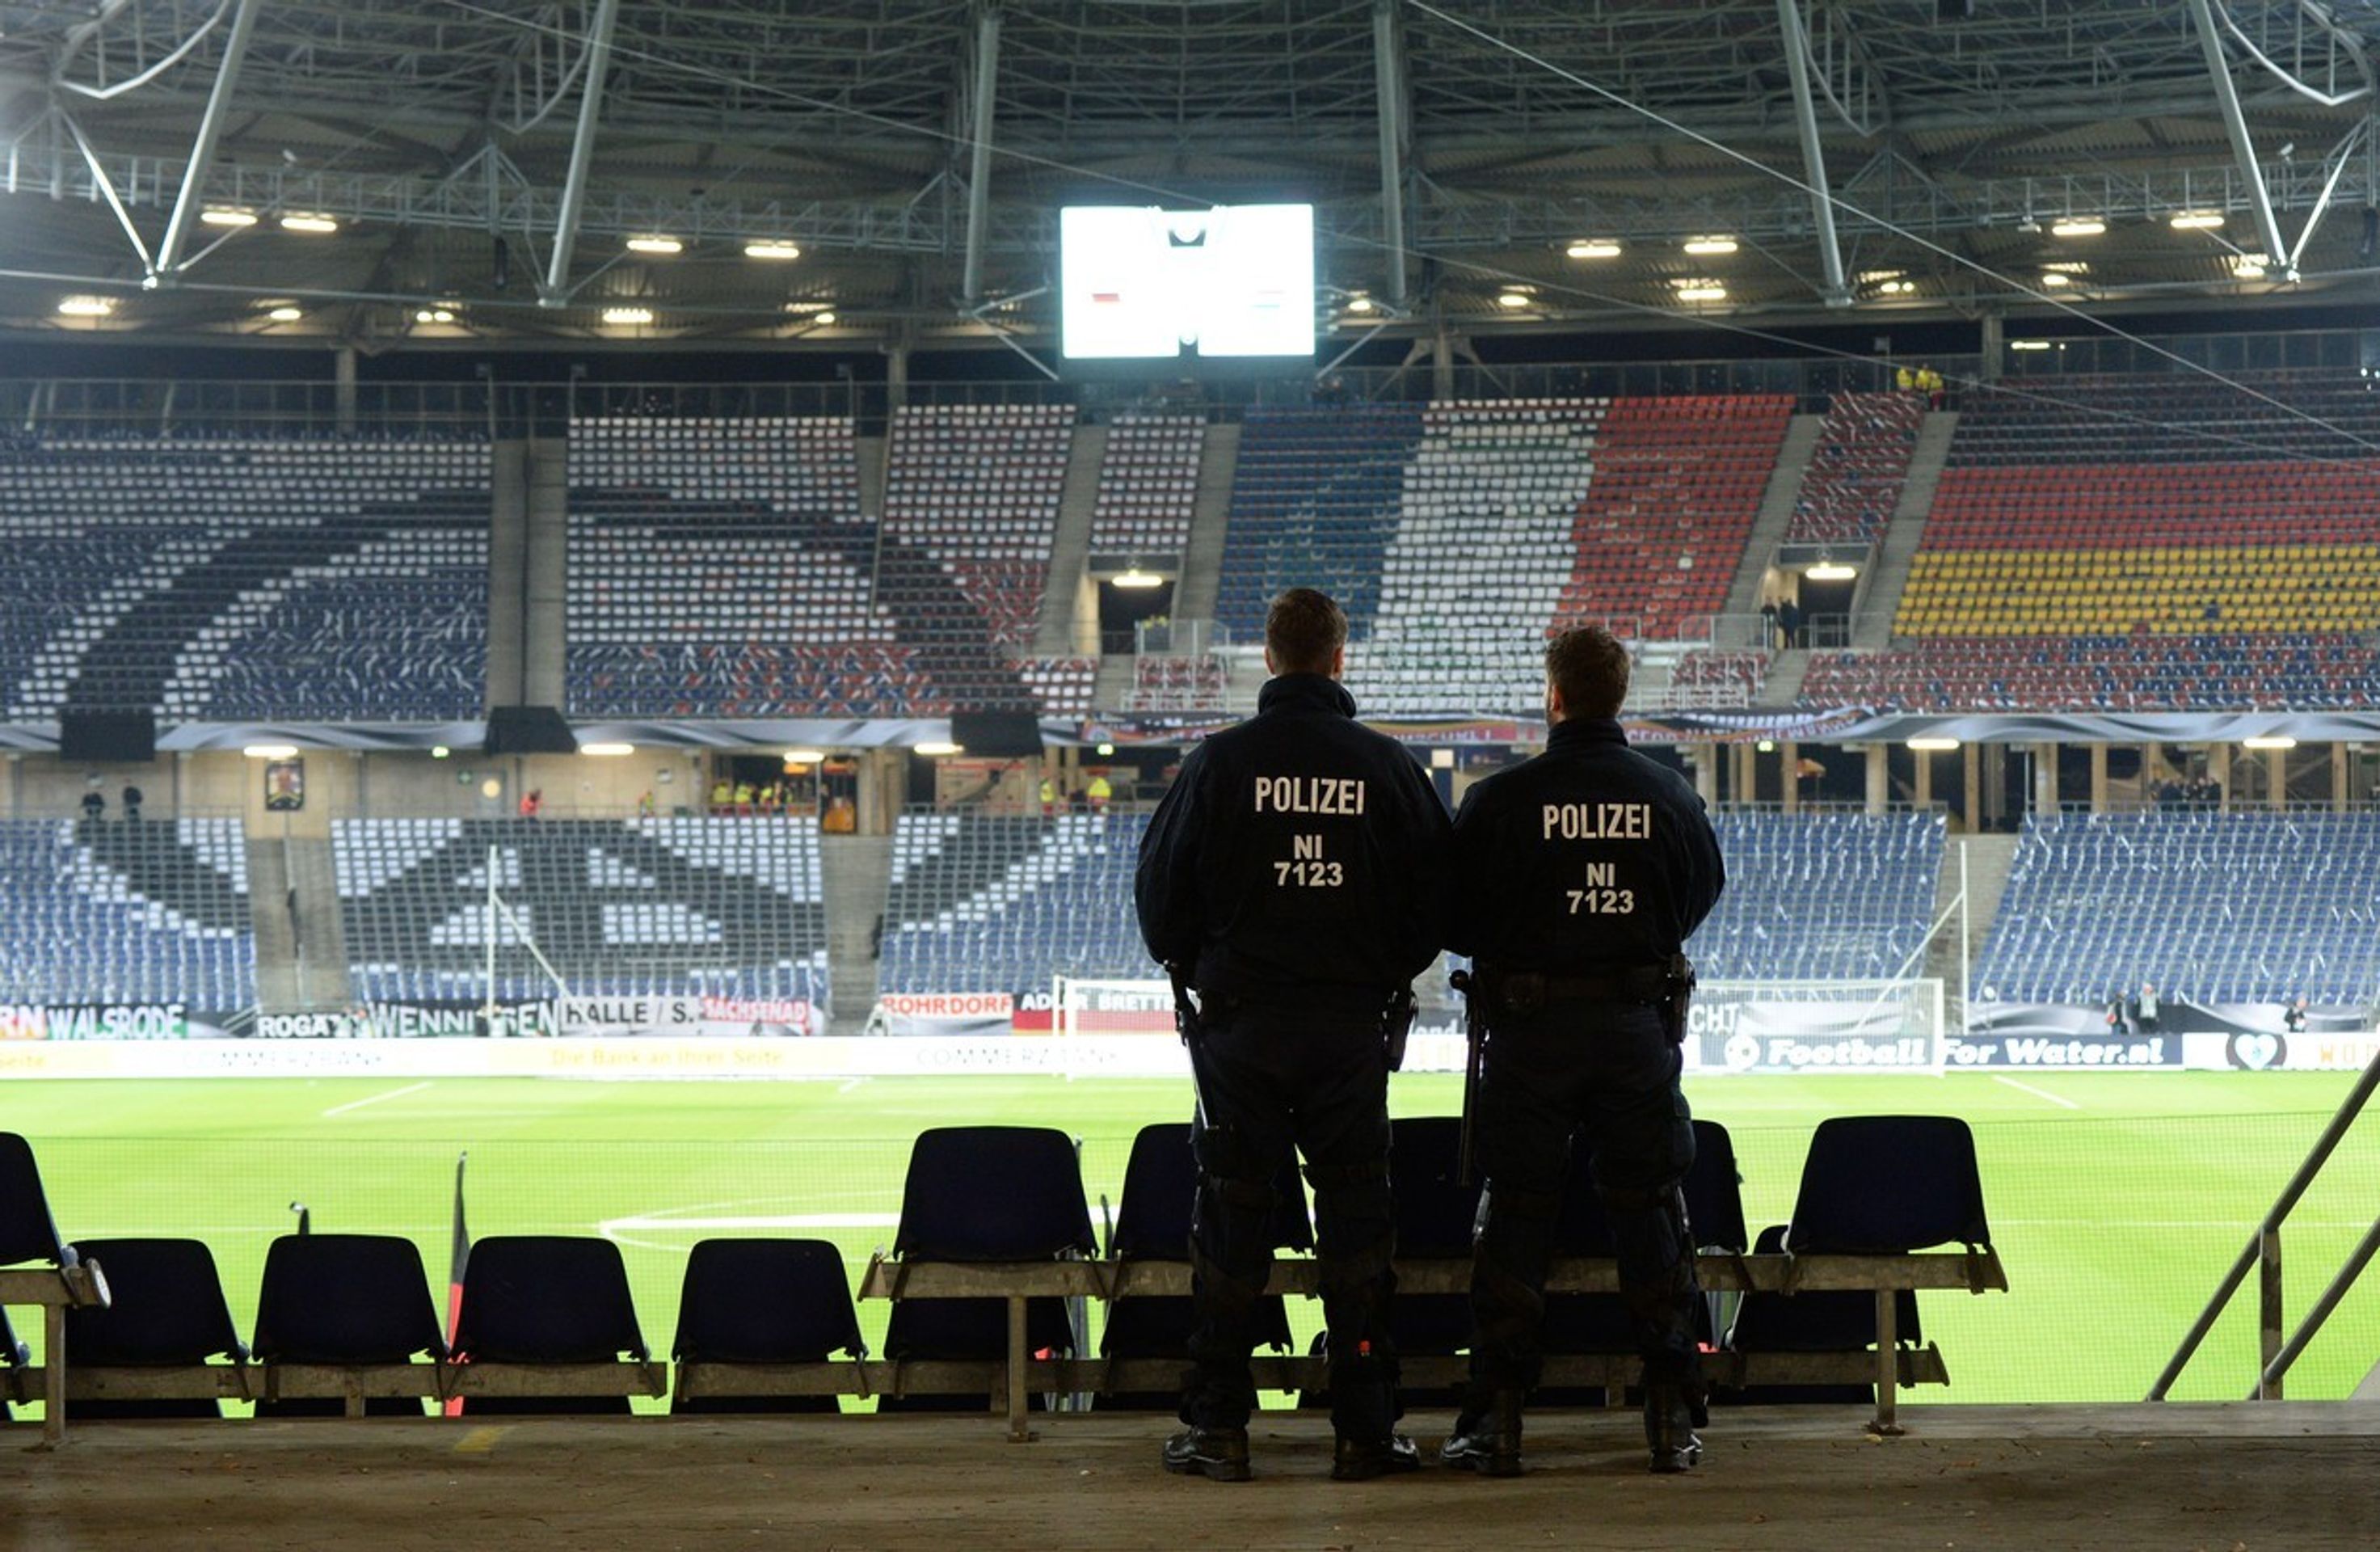 Policejní manévry na stadionu v Hannoveru - 1 - GALERIE: Policejní manévry na stadionu v Hannoveru (3/7)